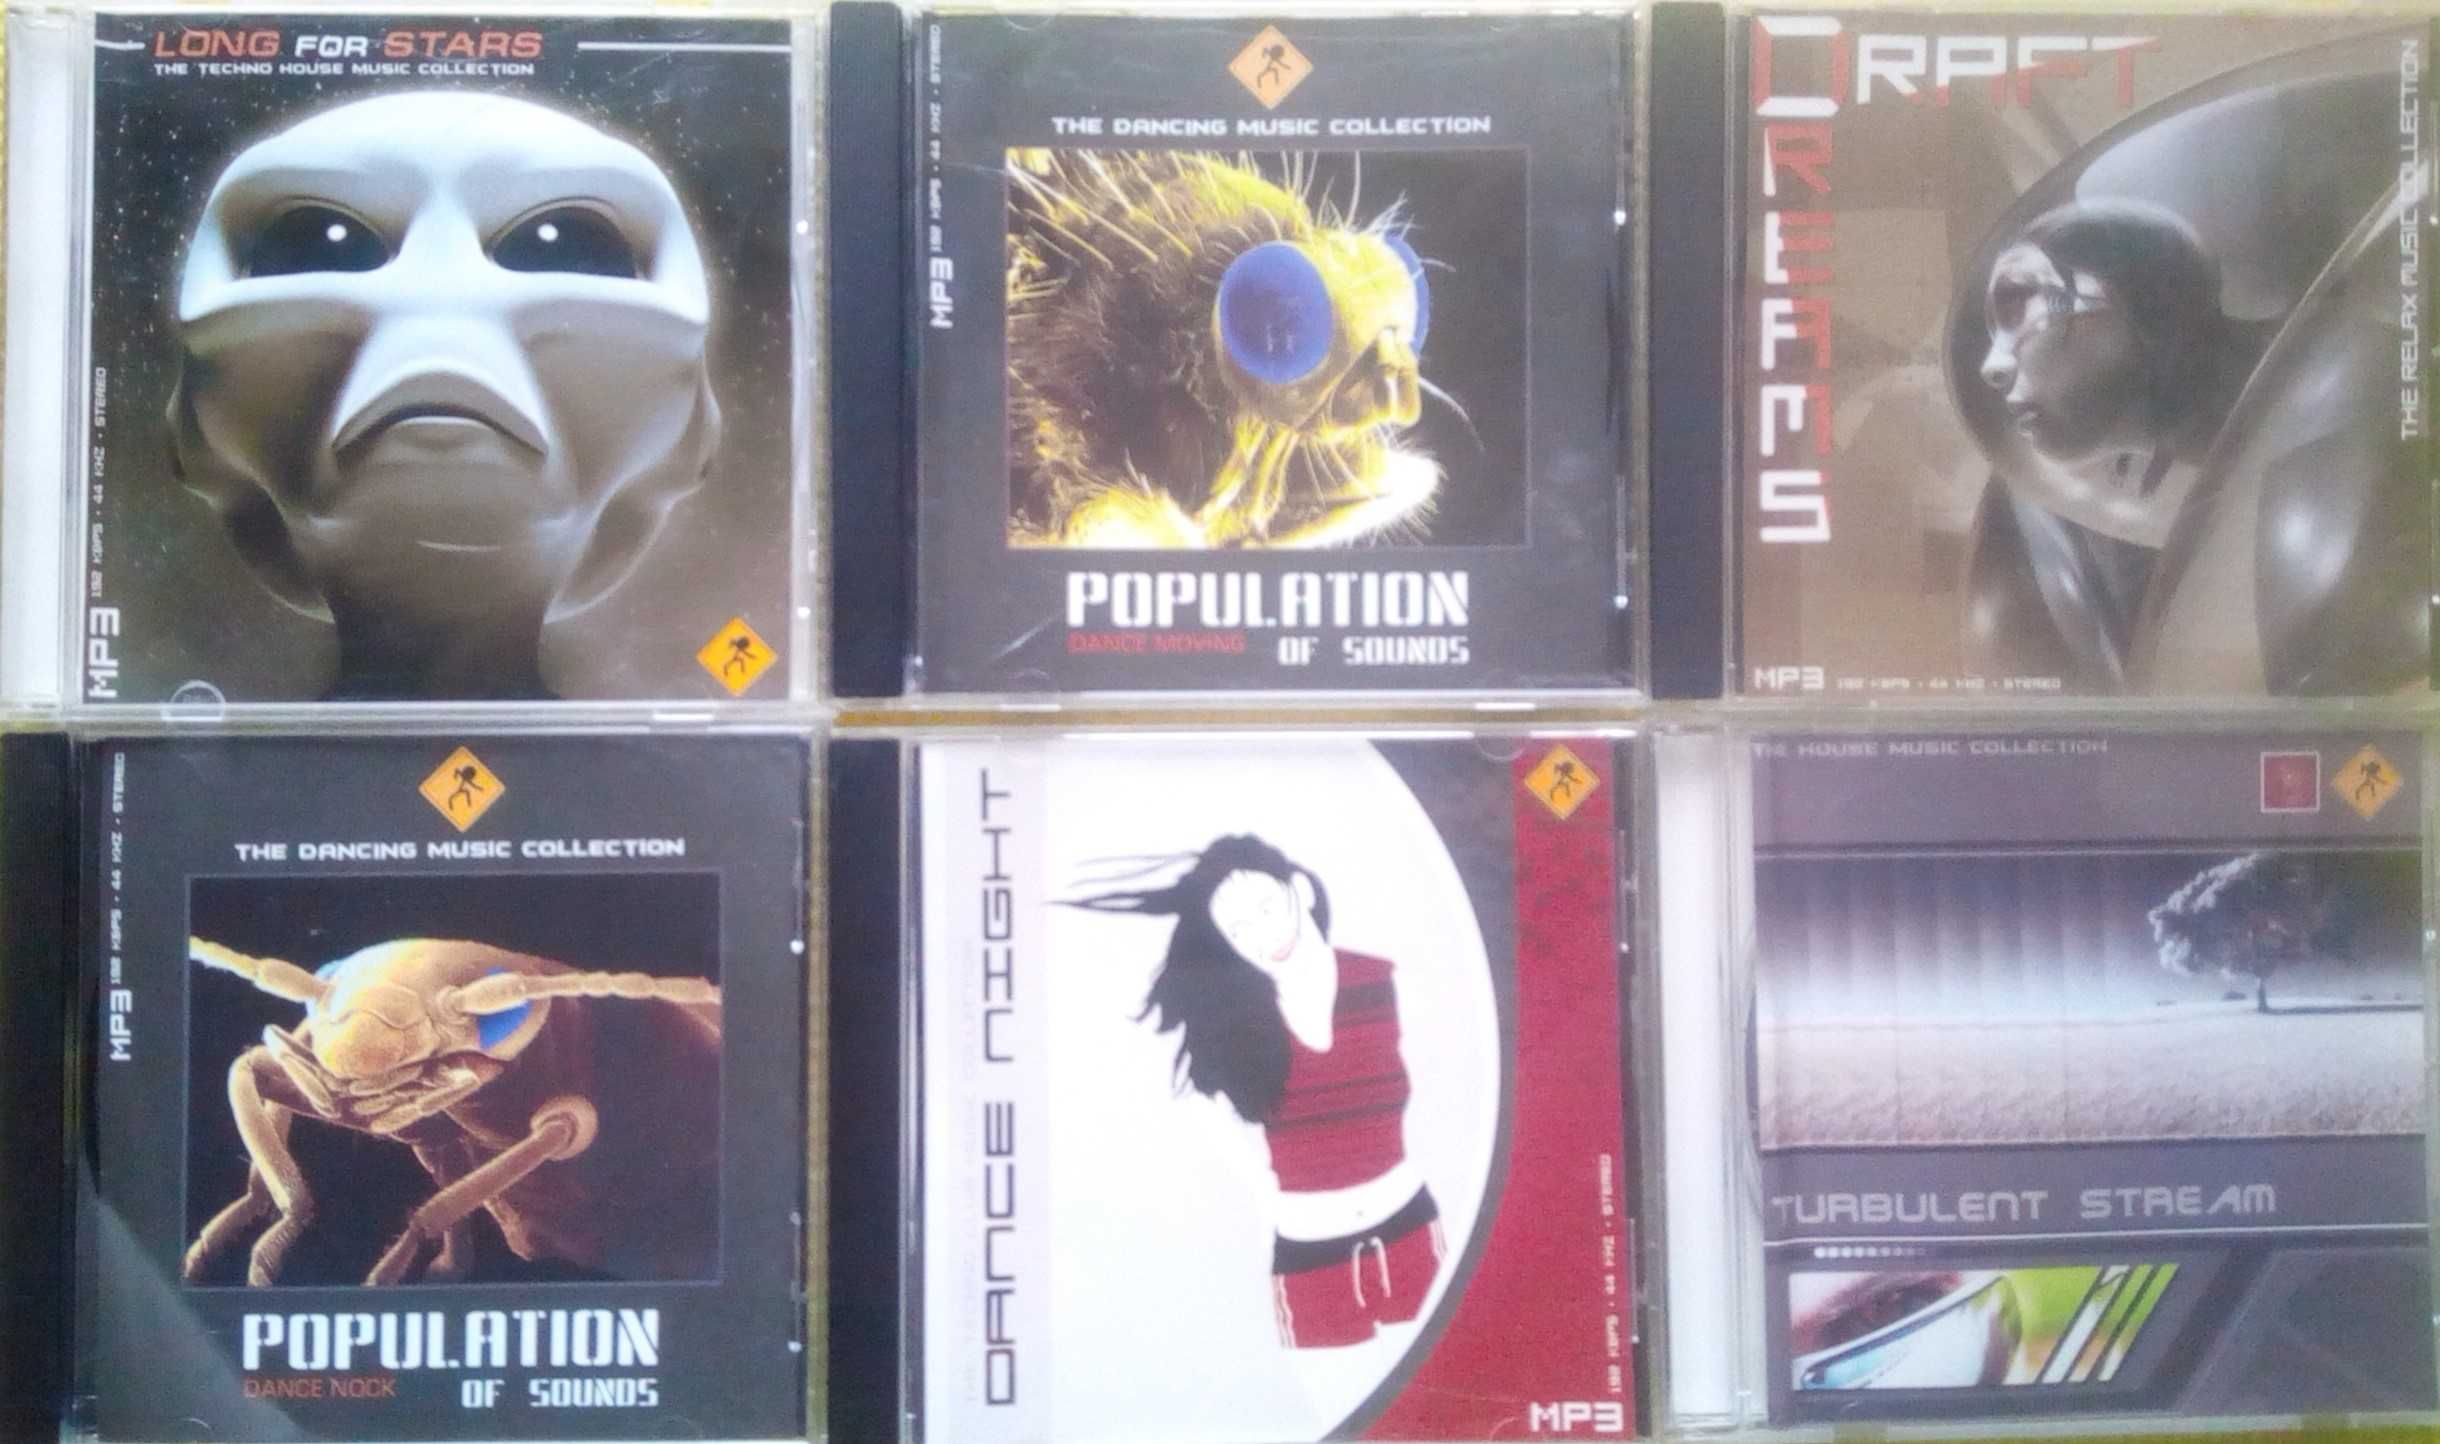 CD диски музыка  рок метал поп сборники в мр3